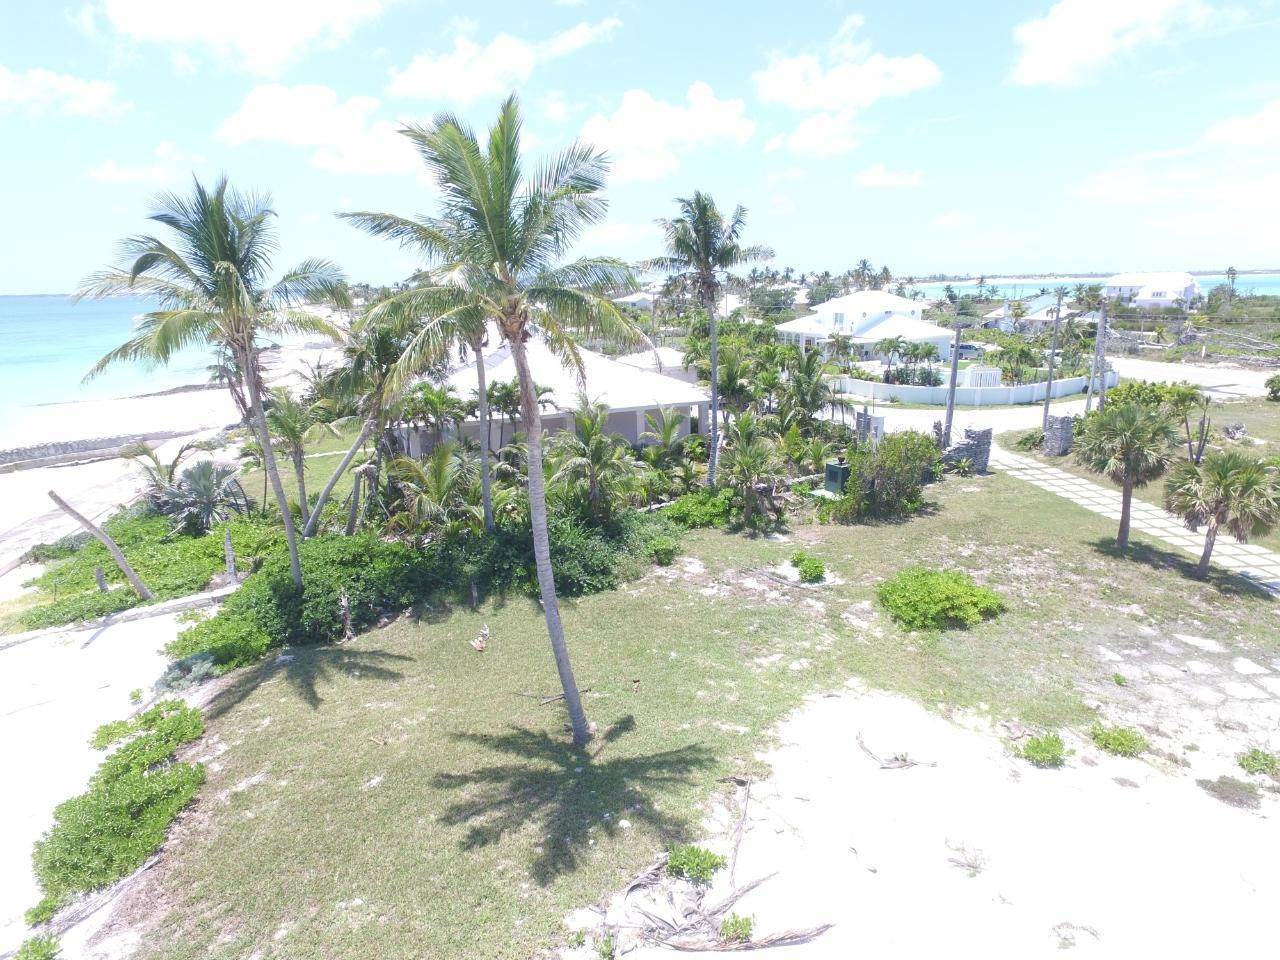 12. Lots / Acreage for Sale at Windward Beach, Treasure Cay, Abaco, Bahamas